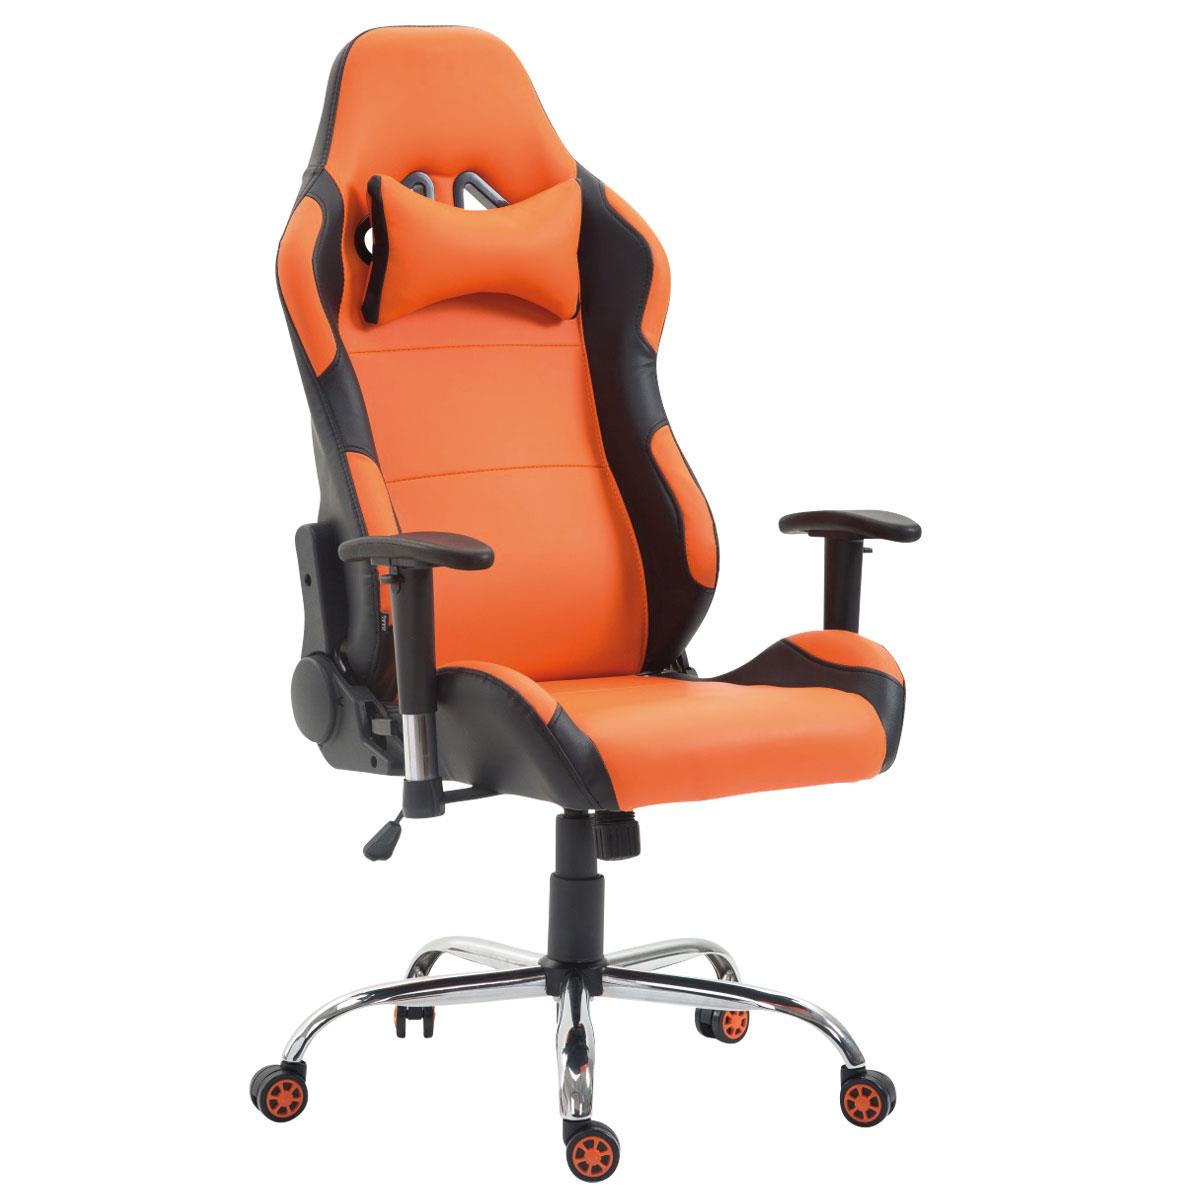 Gaming-Stuhl ROSBY. Sportliches Design und hoher Komfort, Lederbezug, Farbe Orange